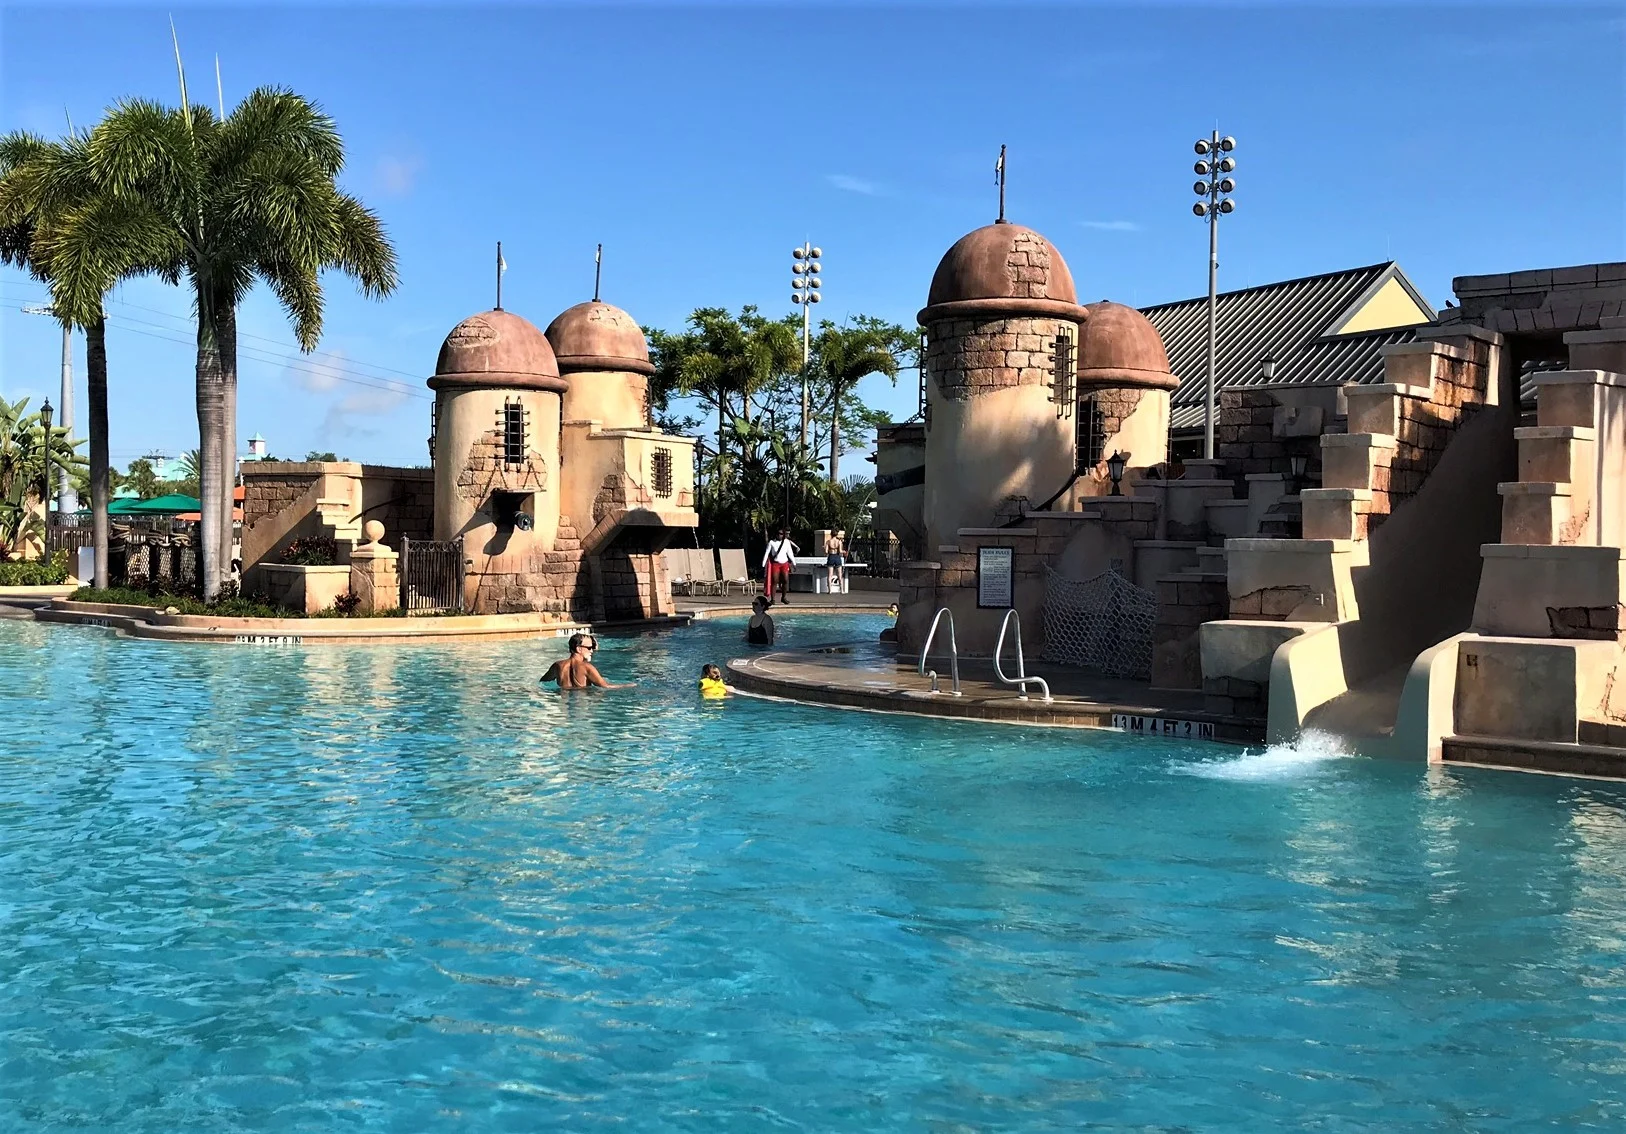 pool at Disney's Caribbean beach resort